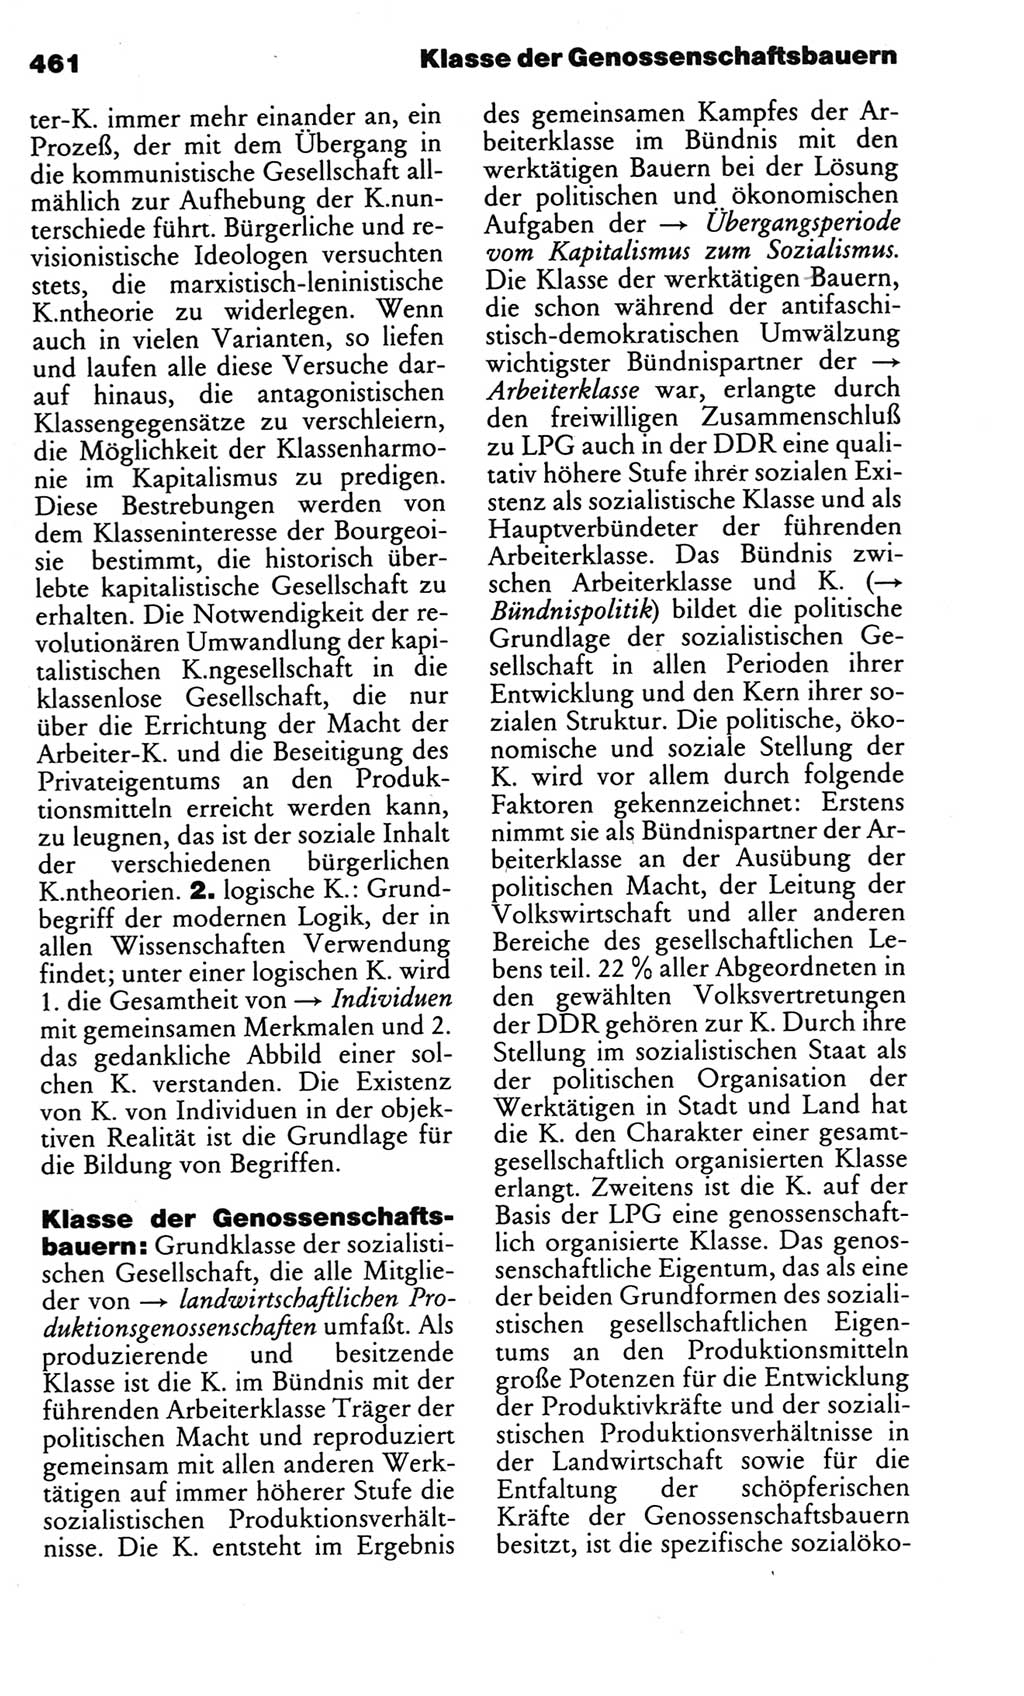 Kleines politisches Wörterbuch [Deutsche Demokratische Republik (DDR)] 1983, Seite 461 (Kl. pol. Wb. DDR 1983, S. 461)